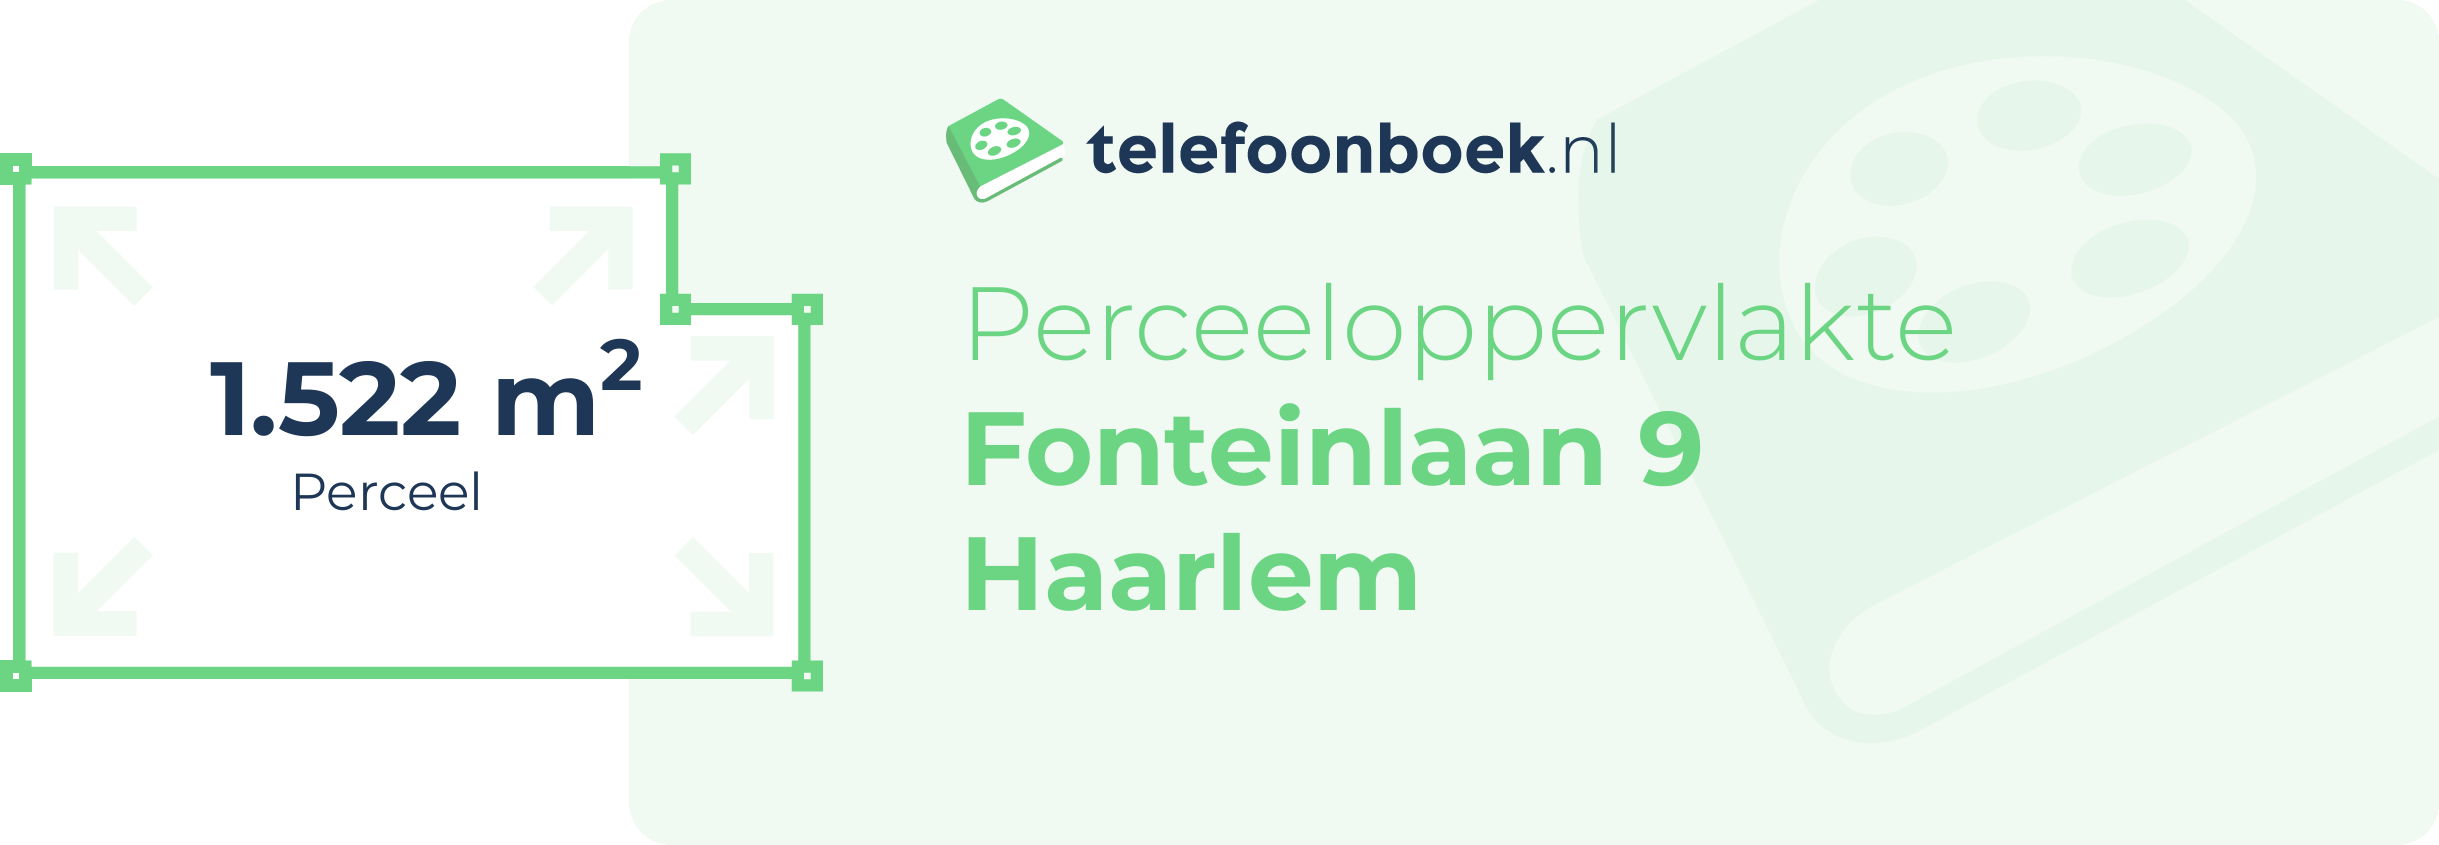 Perceeloppervlakte Fonteinlaan 9 Haarlem